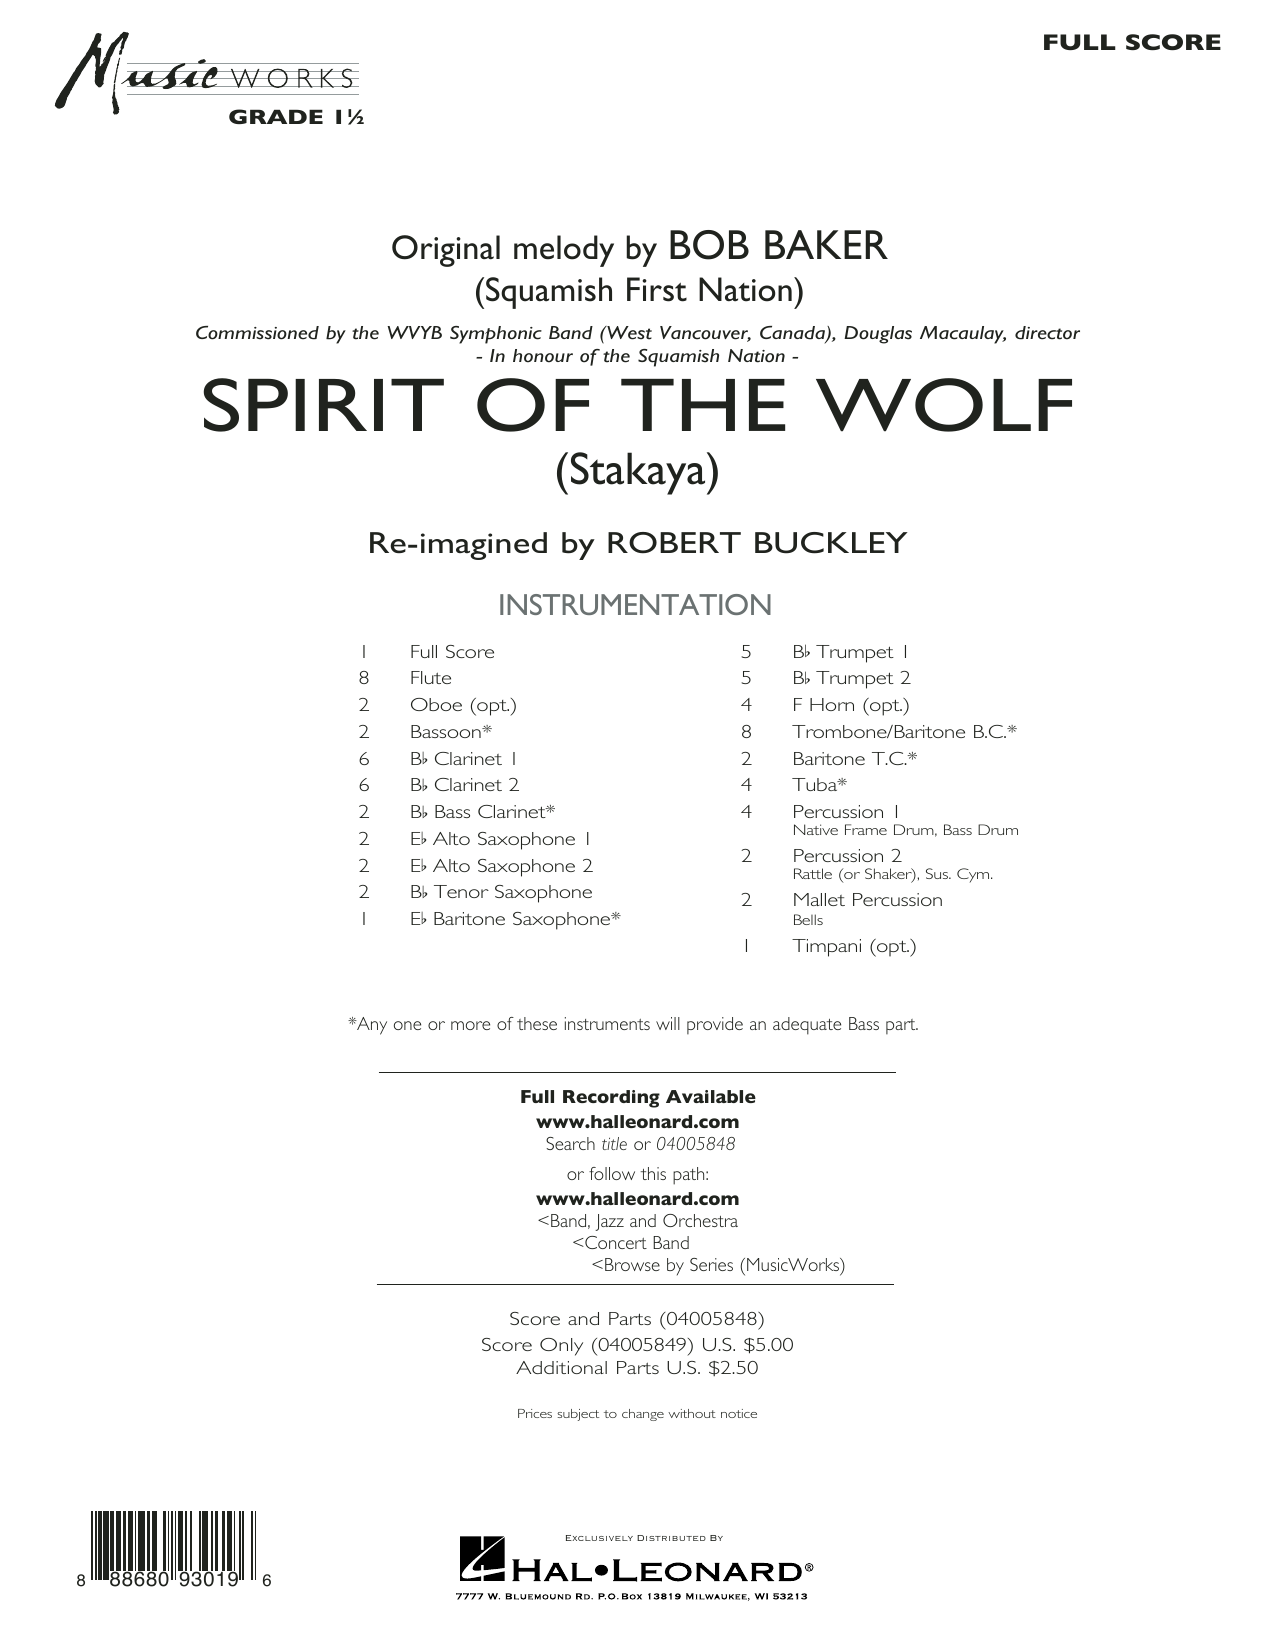 Download Robert Buckley Spirit of the Wolf (Stakaya) - Conducto Sheet Music